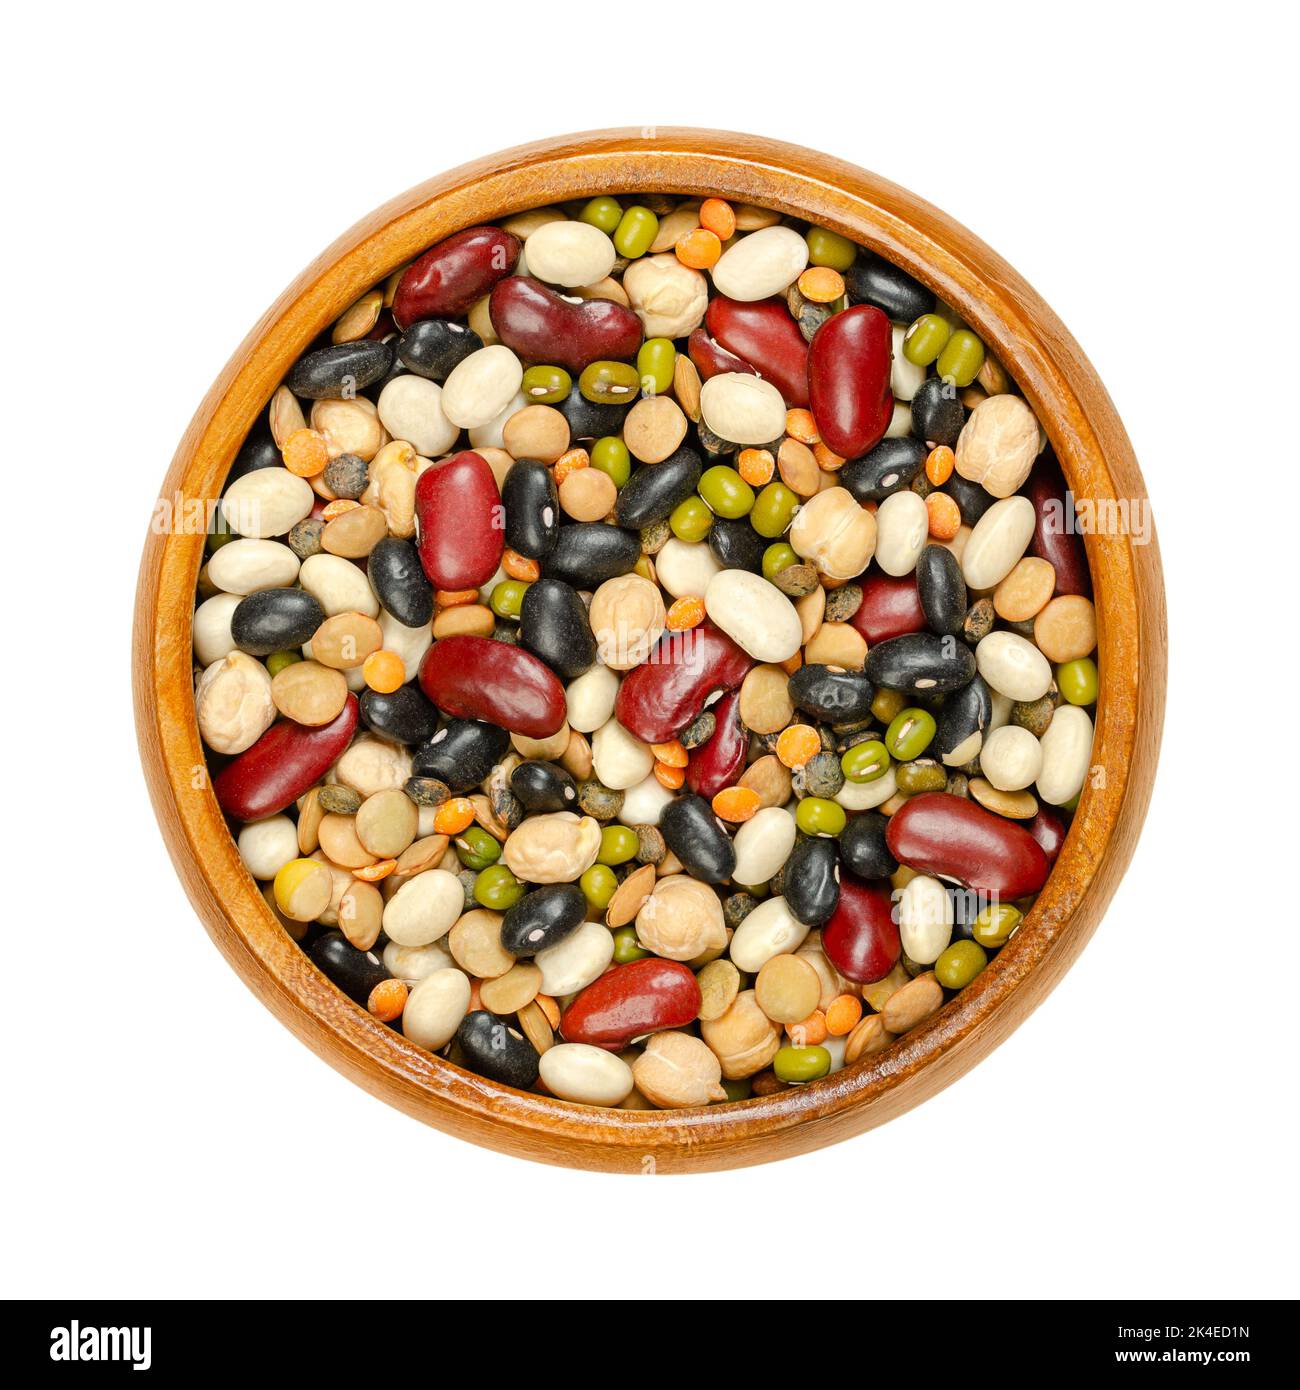 Getrocknete Hülsenfrüchte von oben in einer Holzschüssel gemischt. Mischung aus roten, schwarzen und weißen Bohnen, Mungbohnen, braunen, grünen und roten Linsen und Kichererbsen. Stockfoto